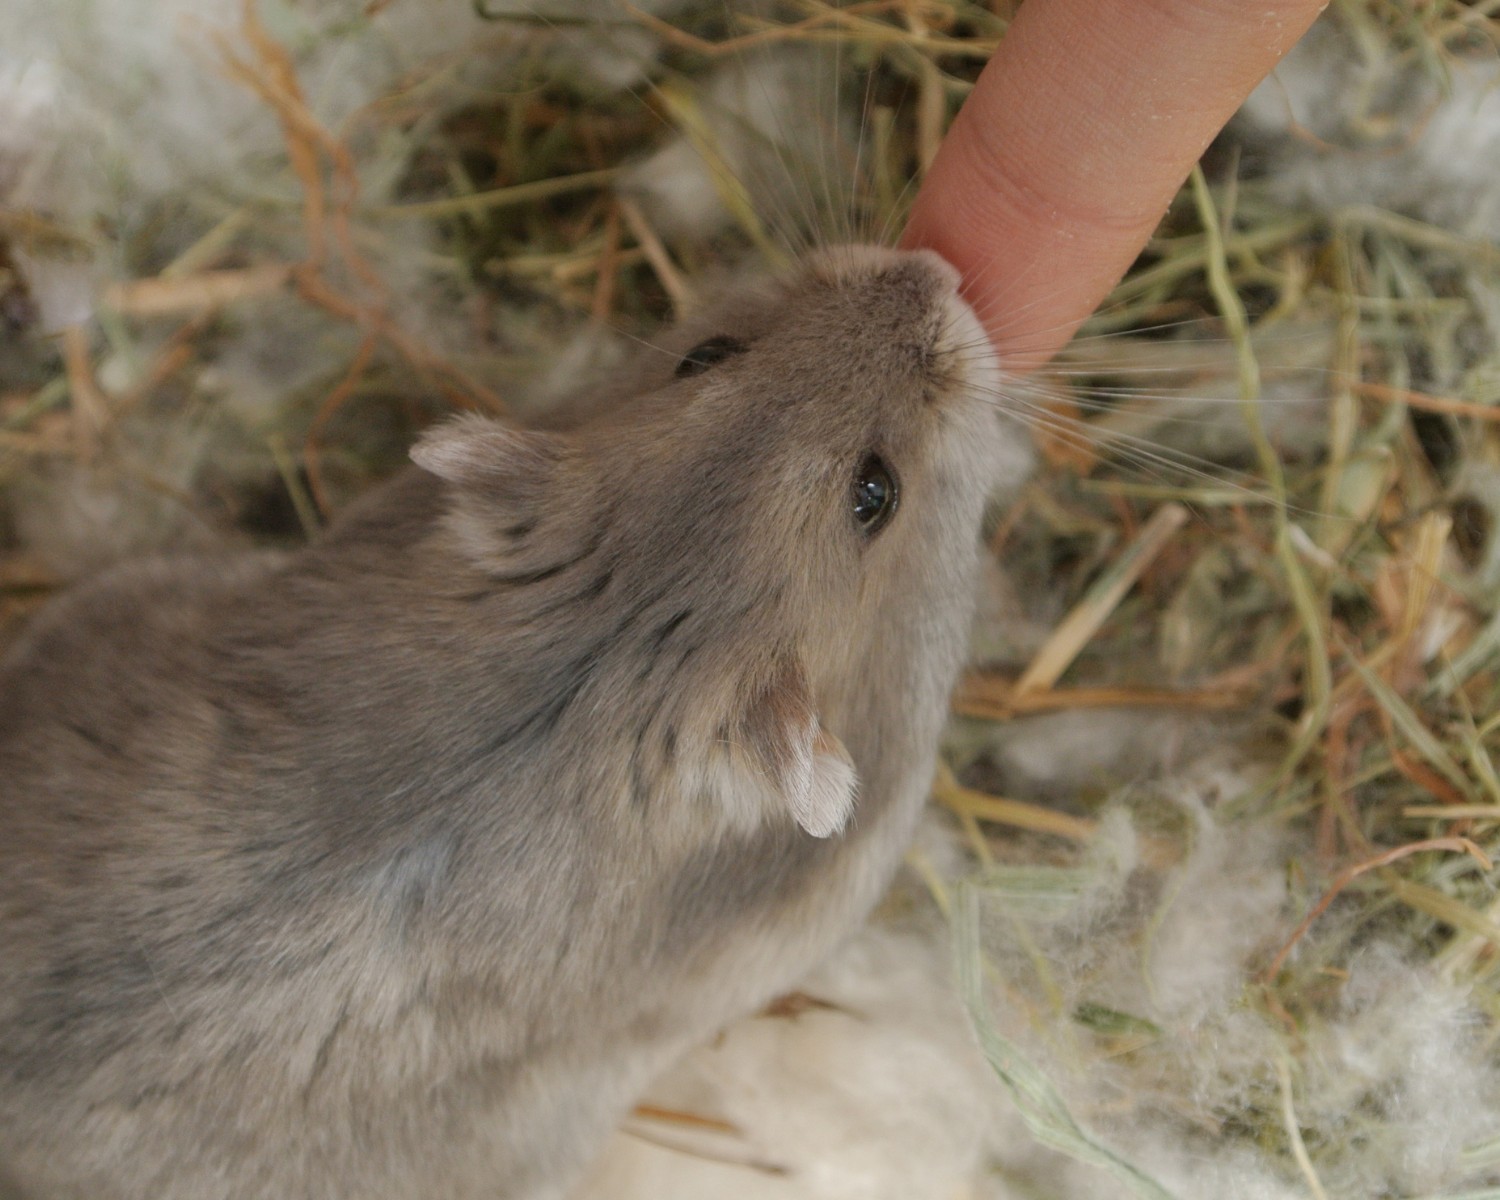 Com bactérias diferentes circulando pelo seu corpo, as mordidas de hamster podem causar infecção em humanos  (Foto: Canva/Creative Commons)